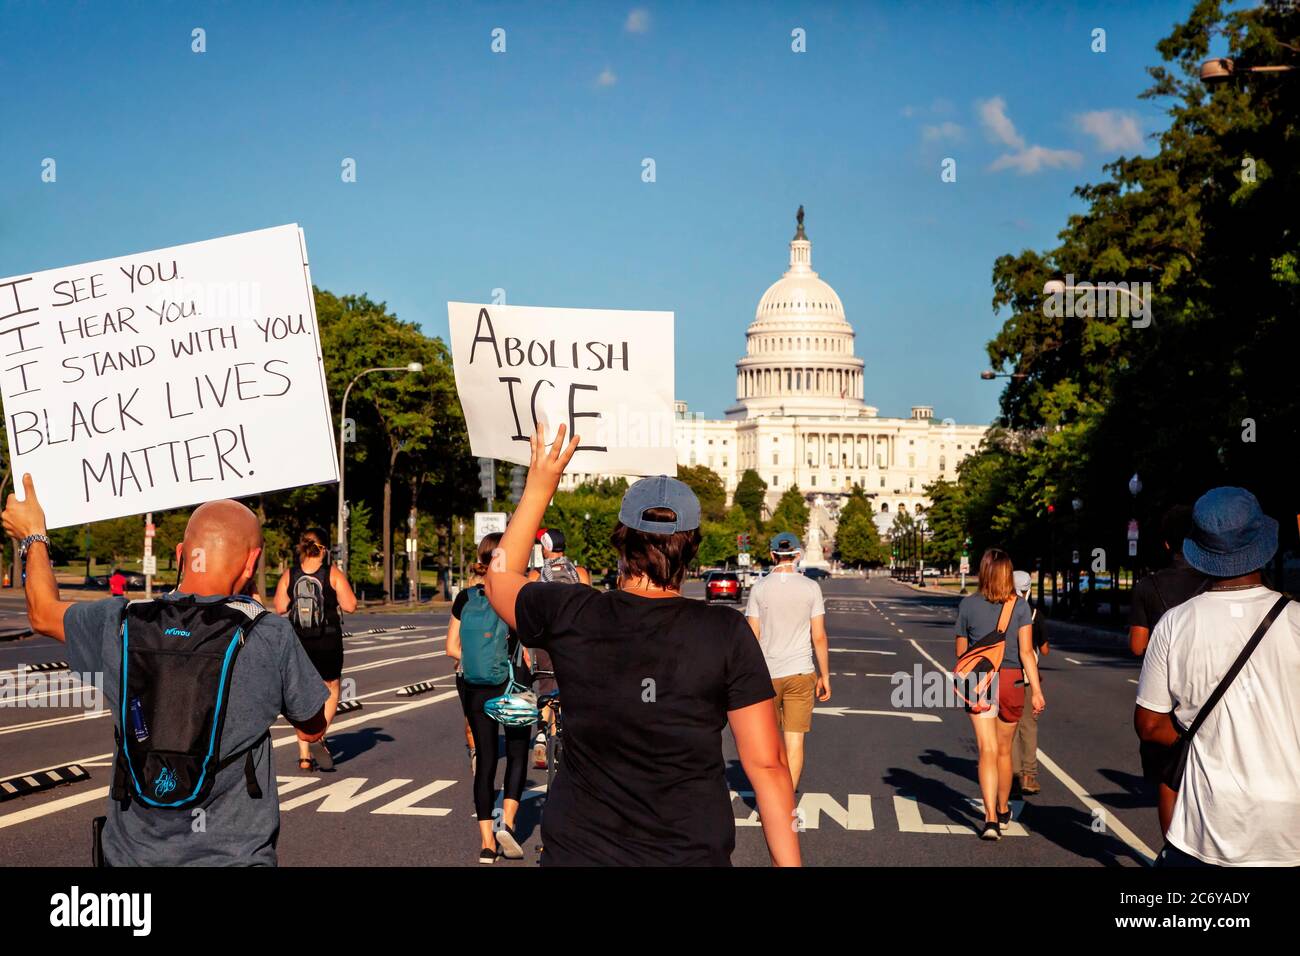 Les manifestants avec des panneaux défilent pour la vie noire et l'immigrant sur Pennsylvania Avenue vers le Capitole, Washington, DC, Etats-Unis Banque D'Images